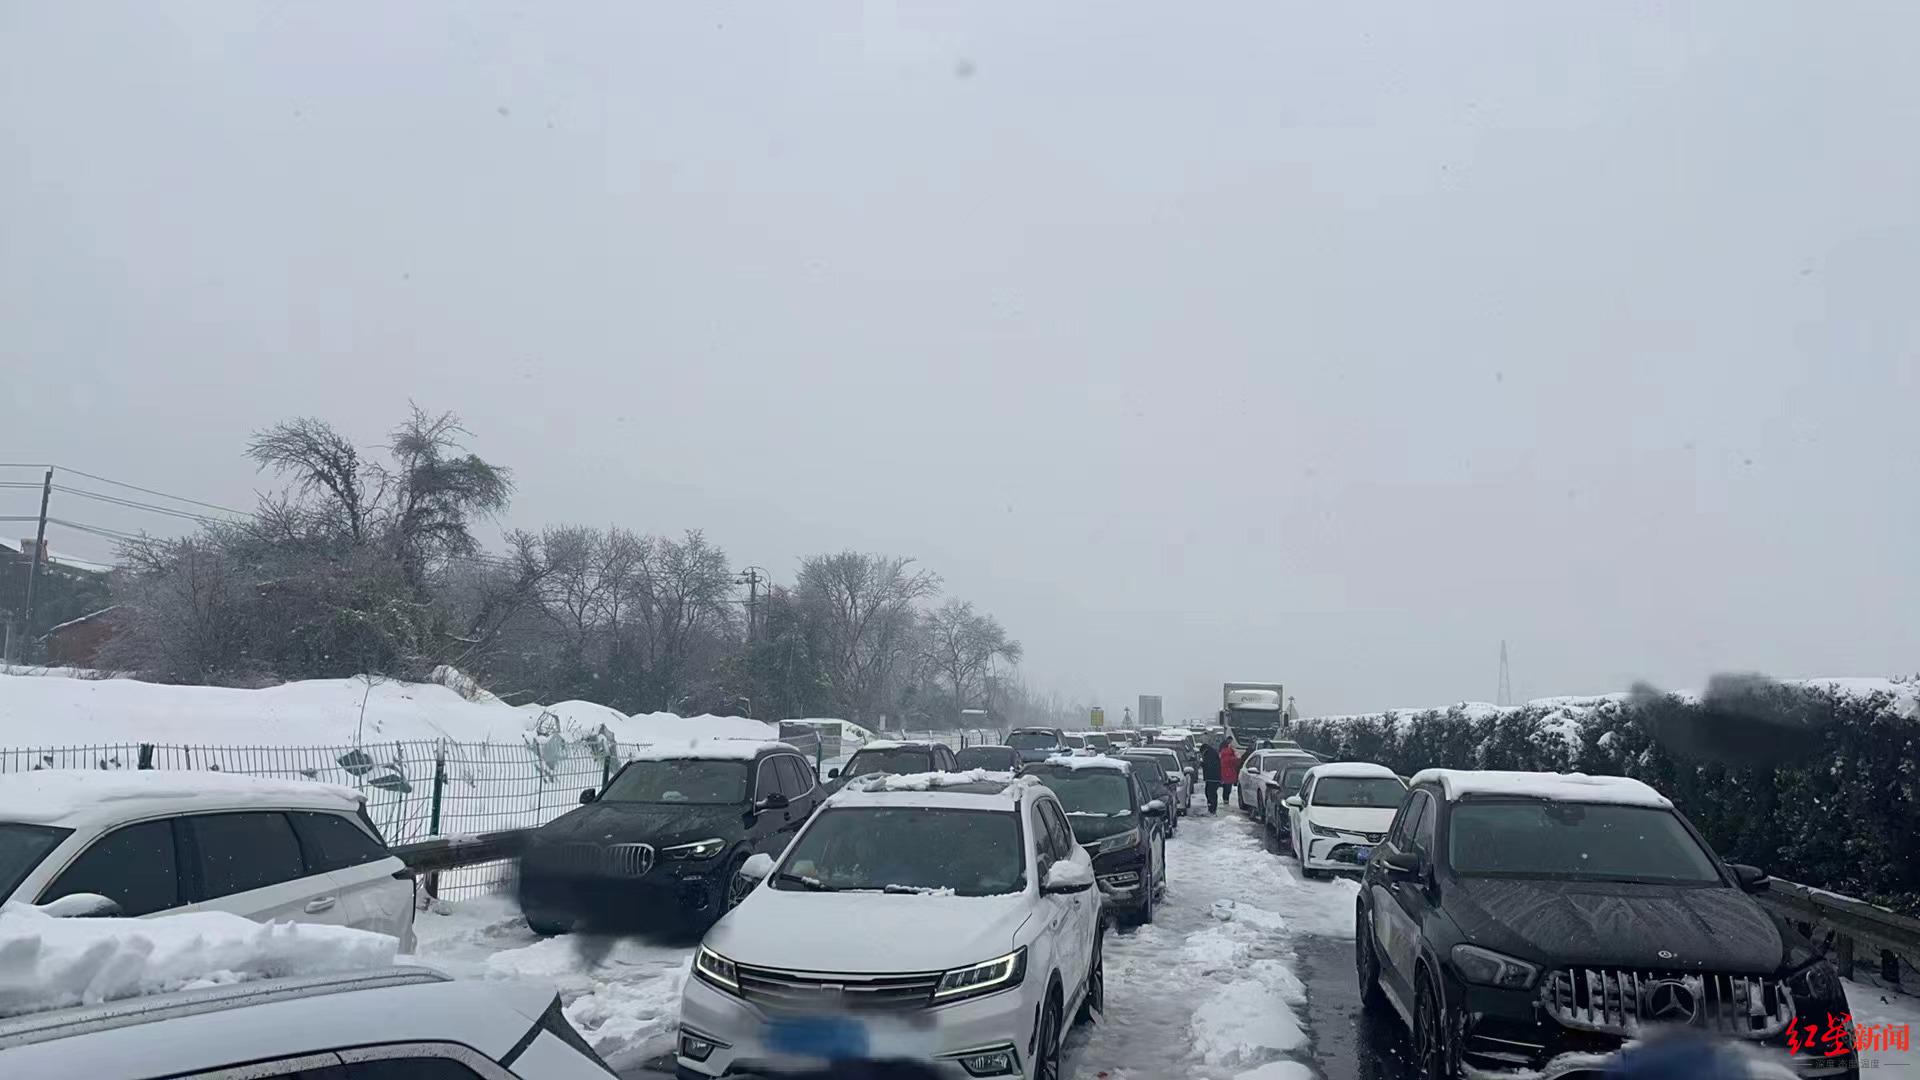 ▲大雪天气导致高速路拥堵 受访者供图 